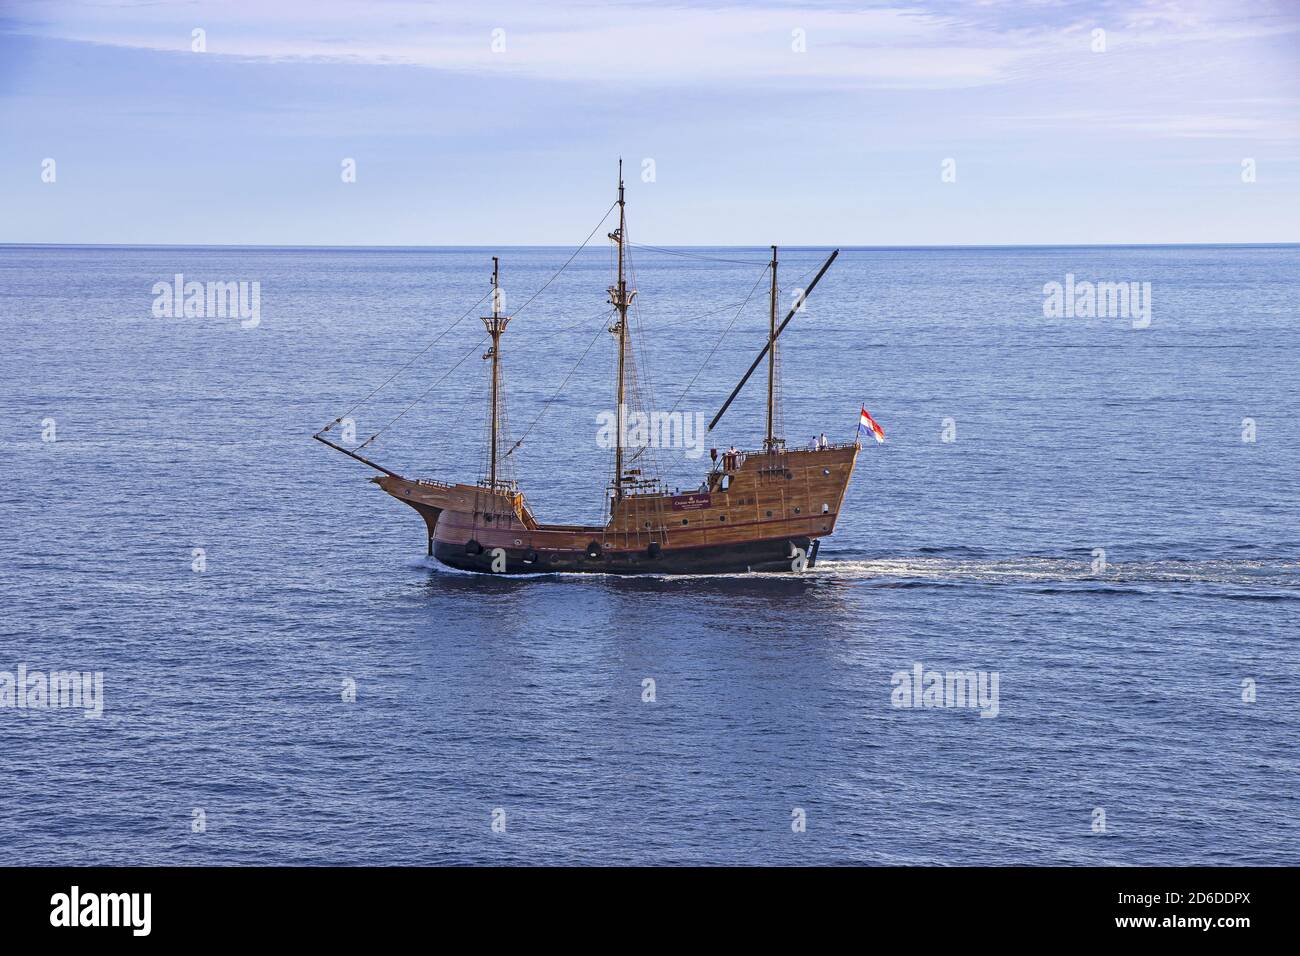 Dubrovnik, Croacia - 02. Septiembre de 2020: Karaka, réplica turística de barco medieval de madera, navegando hasta el antiguo puerto de Dubrovnik, Croacia, Europa. Foto de stock